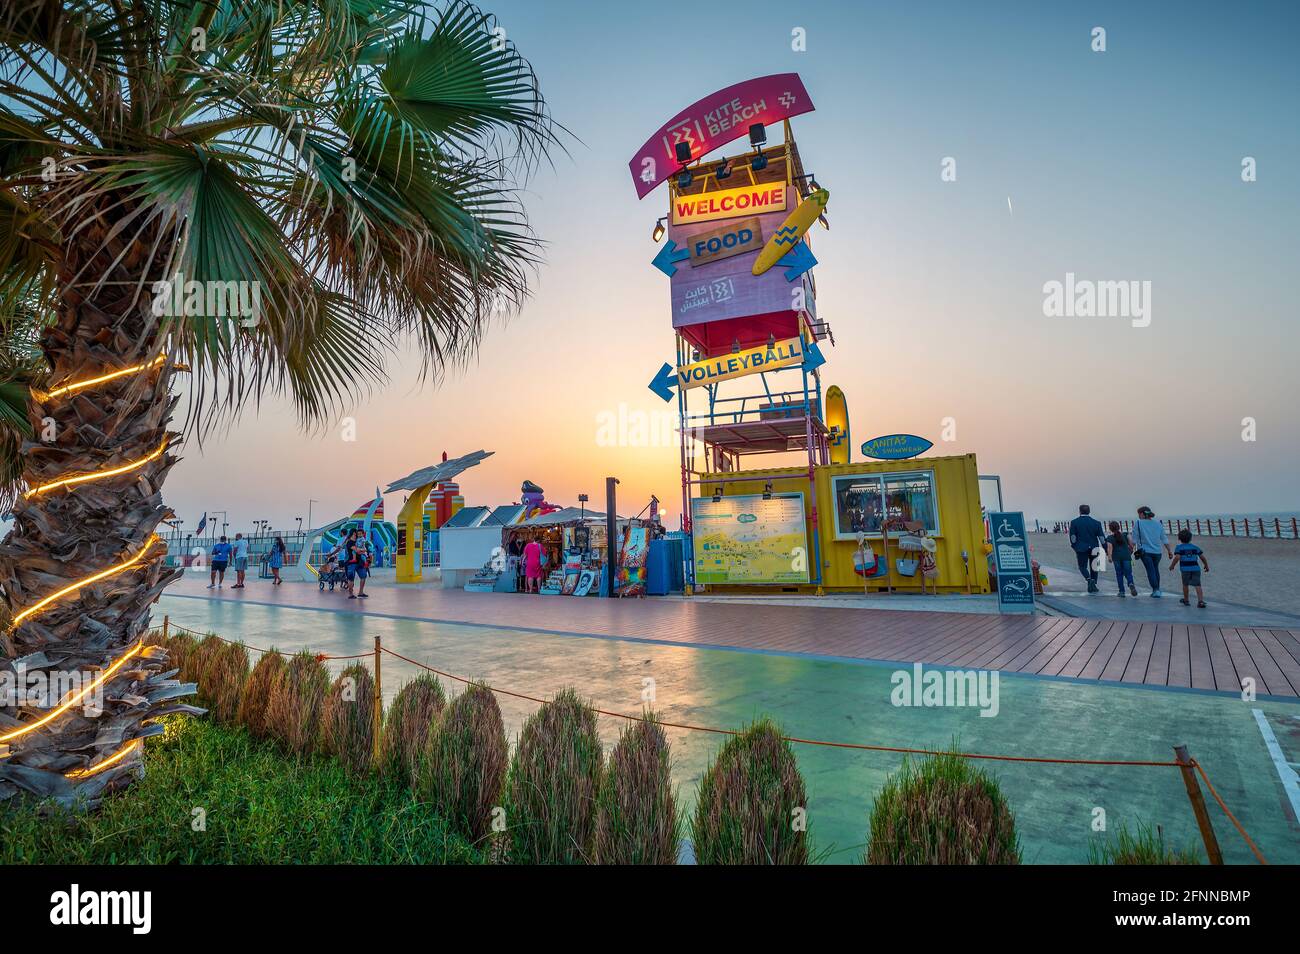 Dubaï, Émirats arabes Unis, 24 mars 2021 : plage de cerfs-volants à Dubaï avec grande piste de course, cafés-bars et restaurants en bord de mer au coucher du soleil Banque D'Images